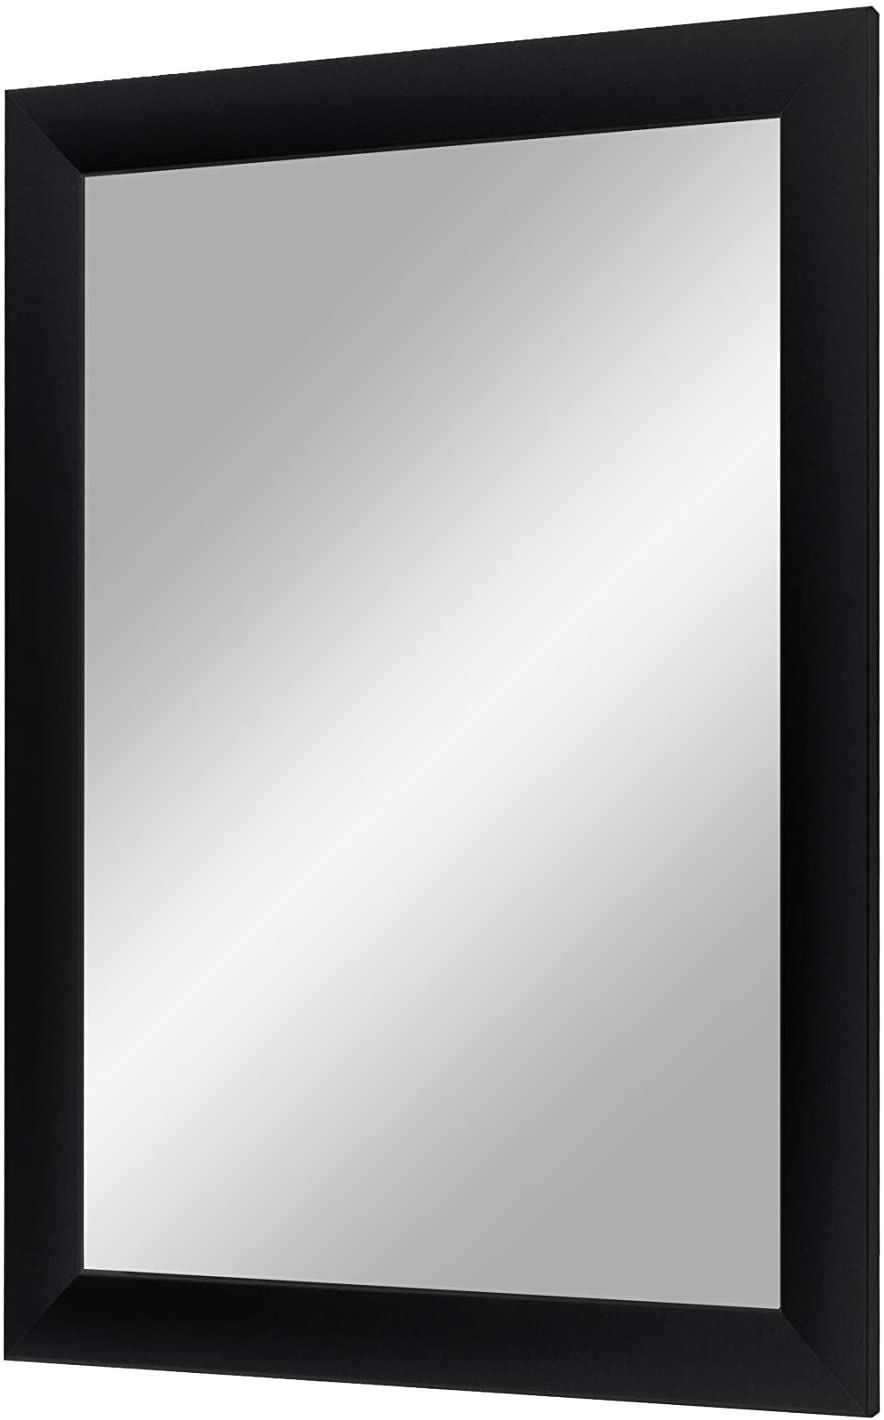 EXCLUSIV Wandspiegel nach Maß (Schwarz-matt), Maßgefertigter Spiegelrahmen inkl. Spiegel und stabiler Rückwand mit Aufhängern